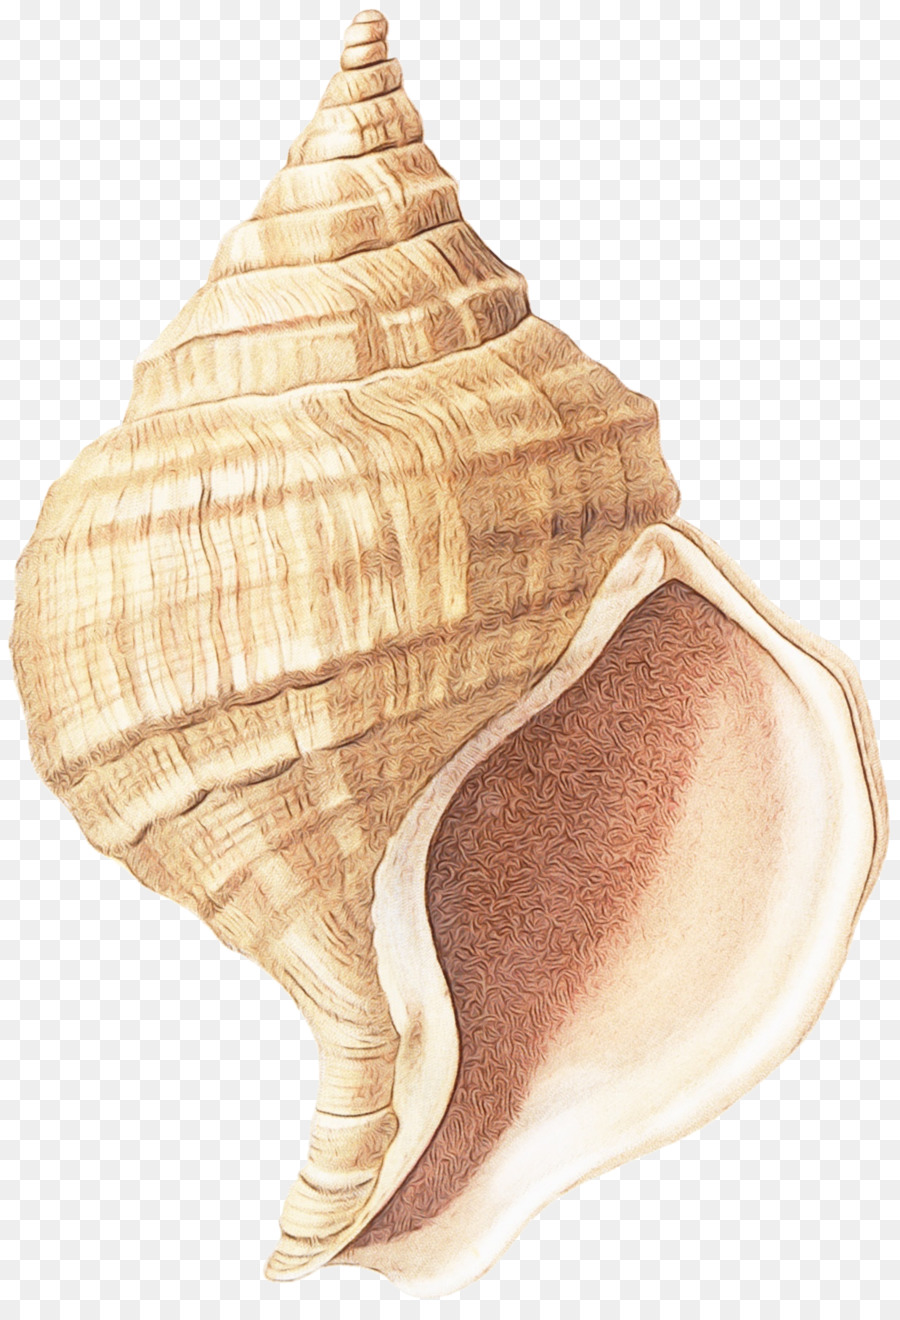 Muschel Muschel Shankha Shell Meeresschnecke - 